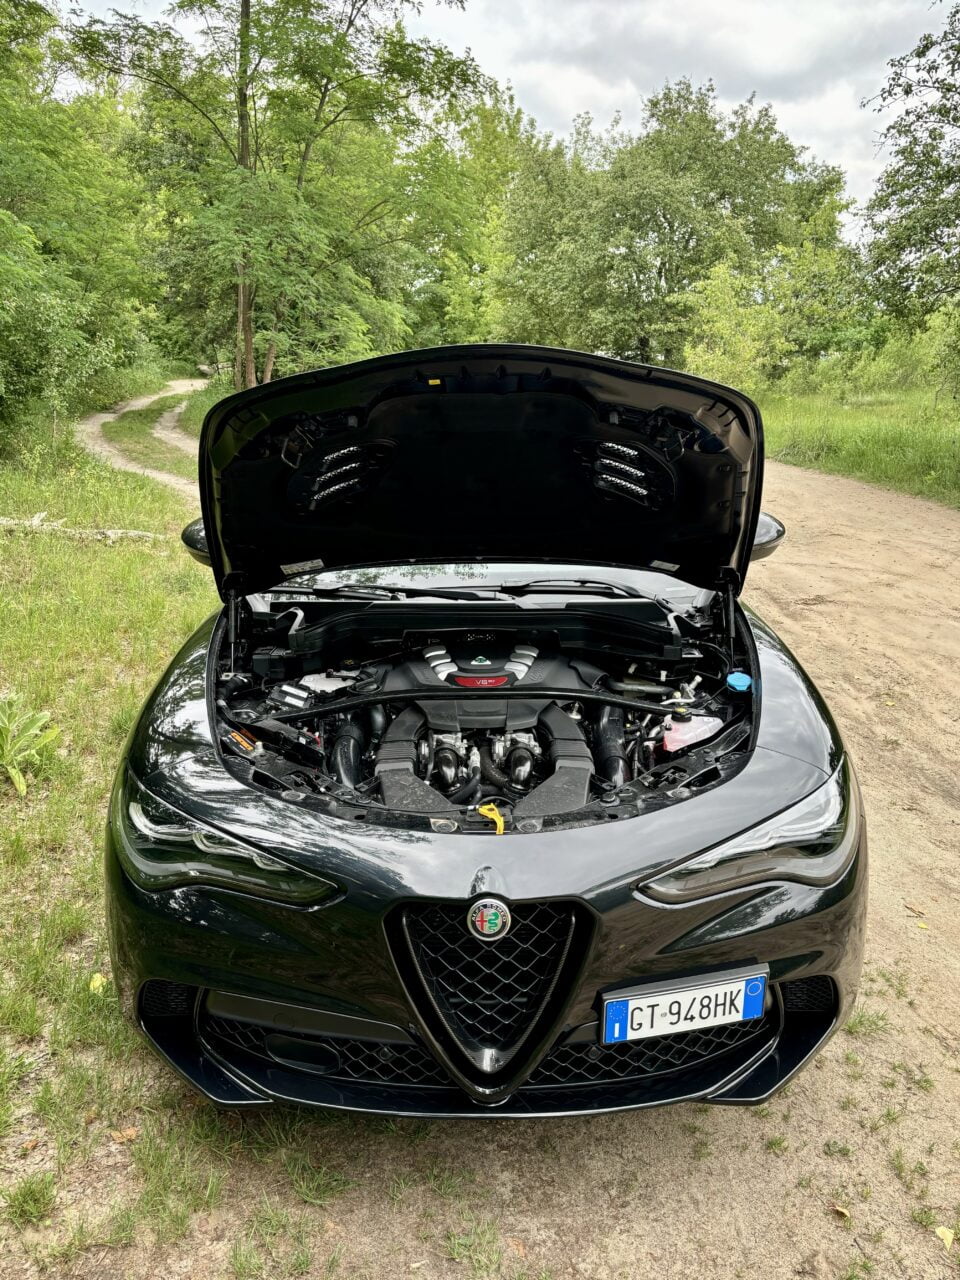 Czarny samochód marki Alfa Romeo z otwartą maską, stojący na polnej drodze otoczonej zielenią.